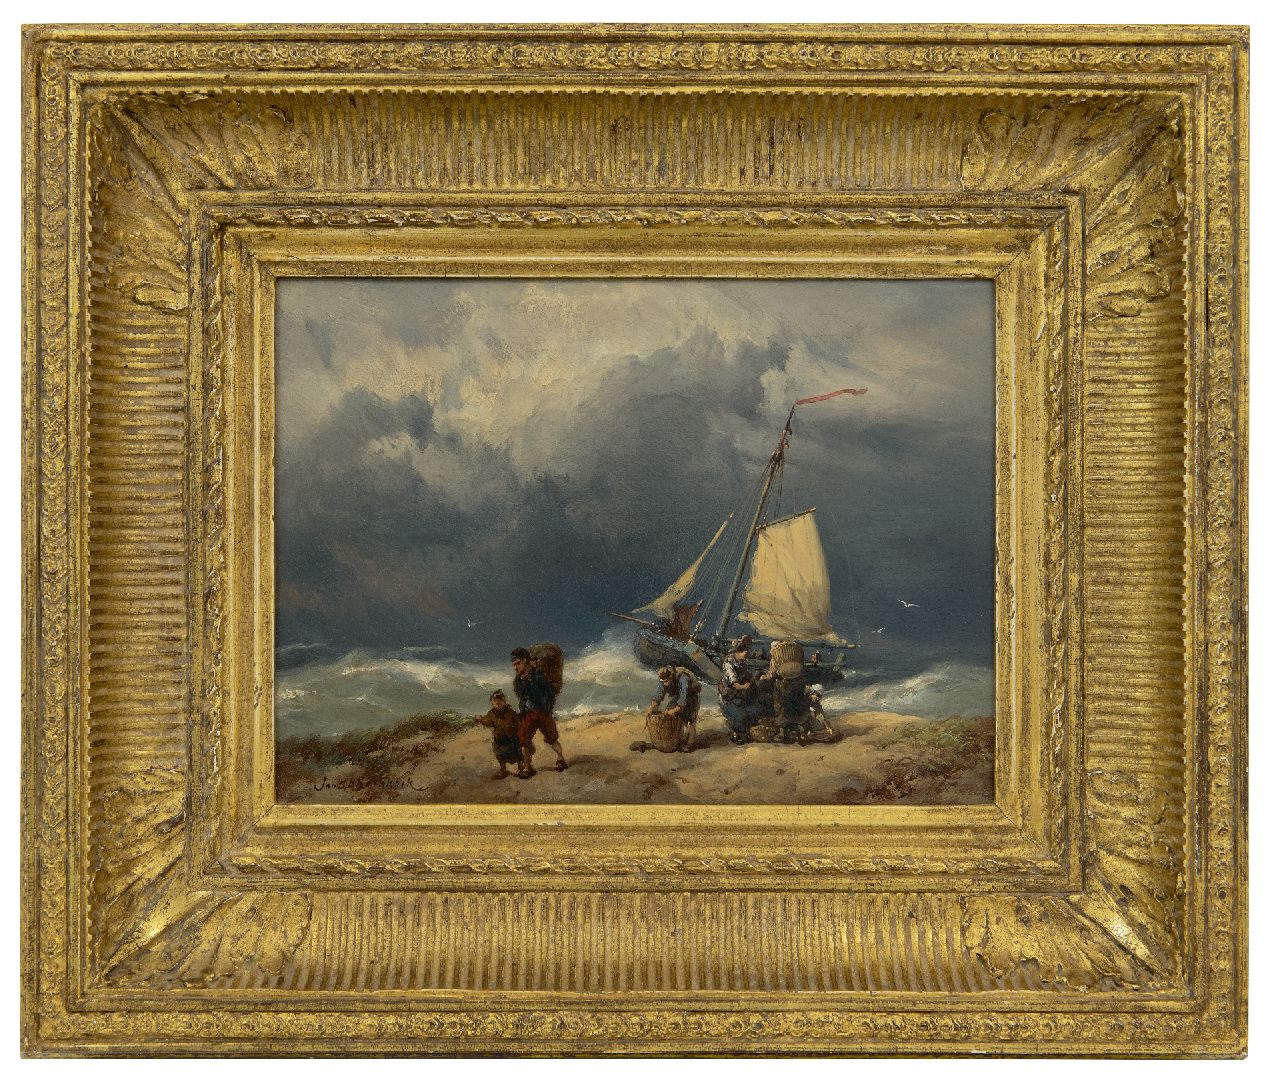 Koekkoek J.H.B.  | Johannes Hermanus Barend 'Jan H.B.' Koekkoek | Paintings offered for sale | Fisherfolk on a windswept beach, oil on panel 17.2 x 23.4 cm, signed l.l.